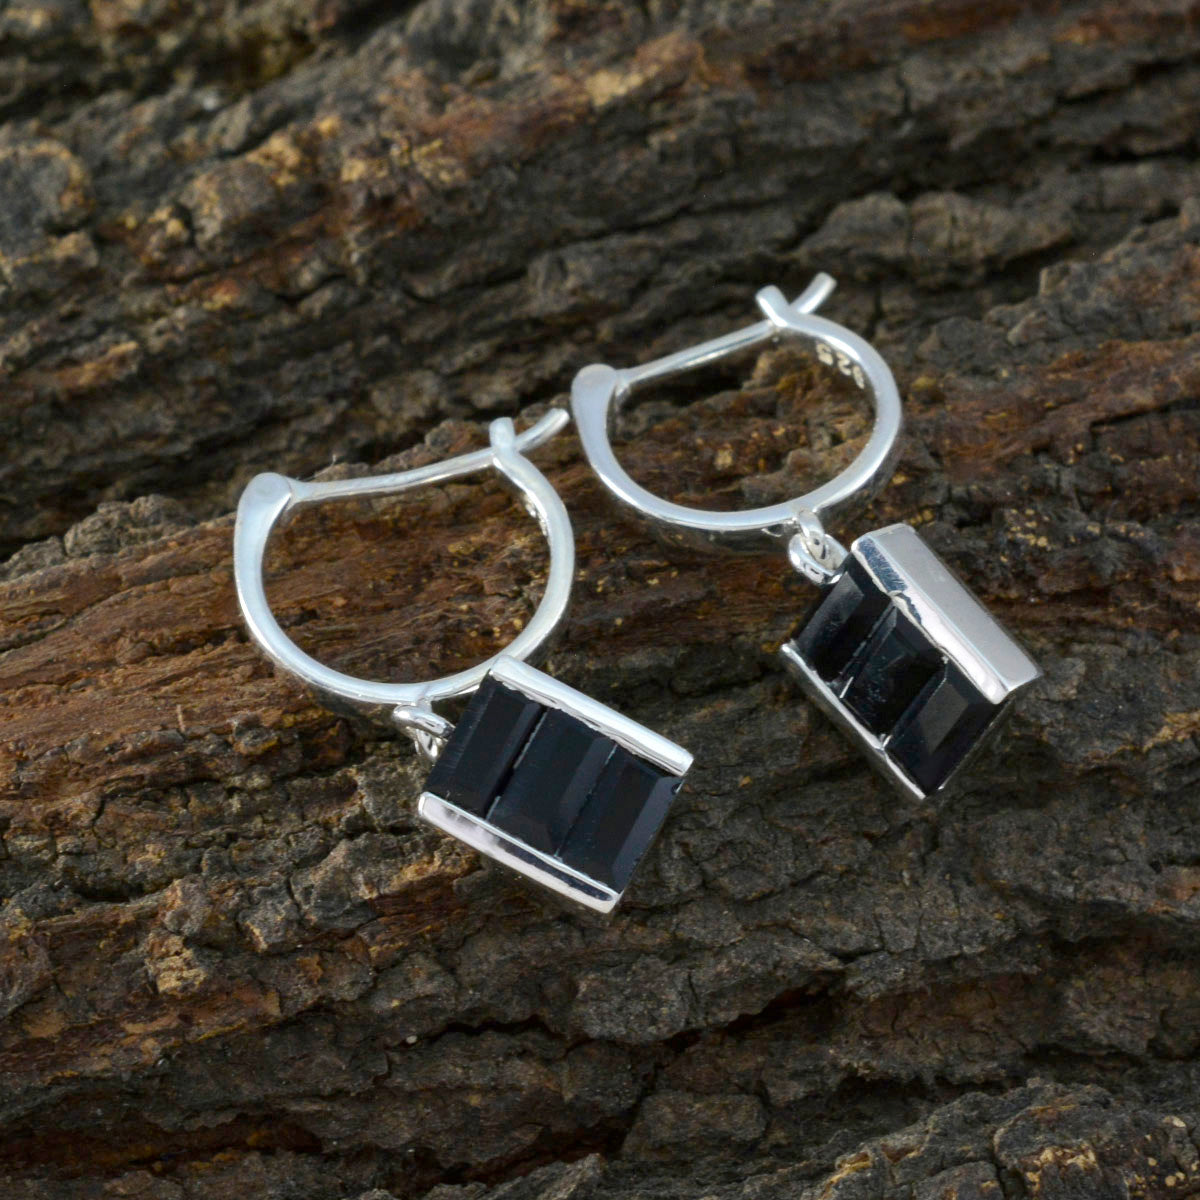 Riyo Mooie Sterling Zilveren Oorbel Voor Vrouw Zwarte Onyx Oorbel Bezel Setting Zwarte Oorbel Dangle Earring